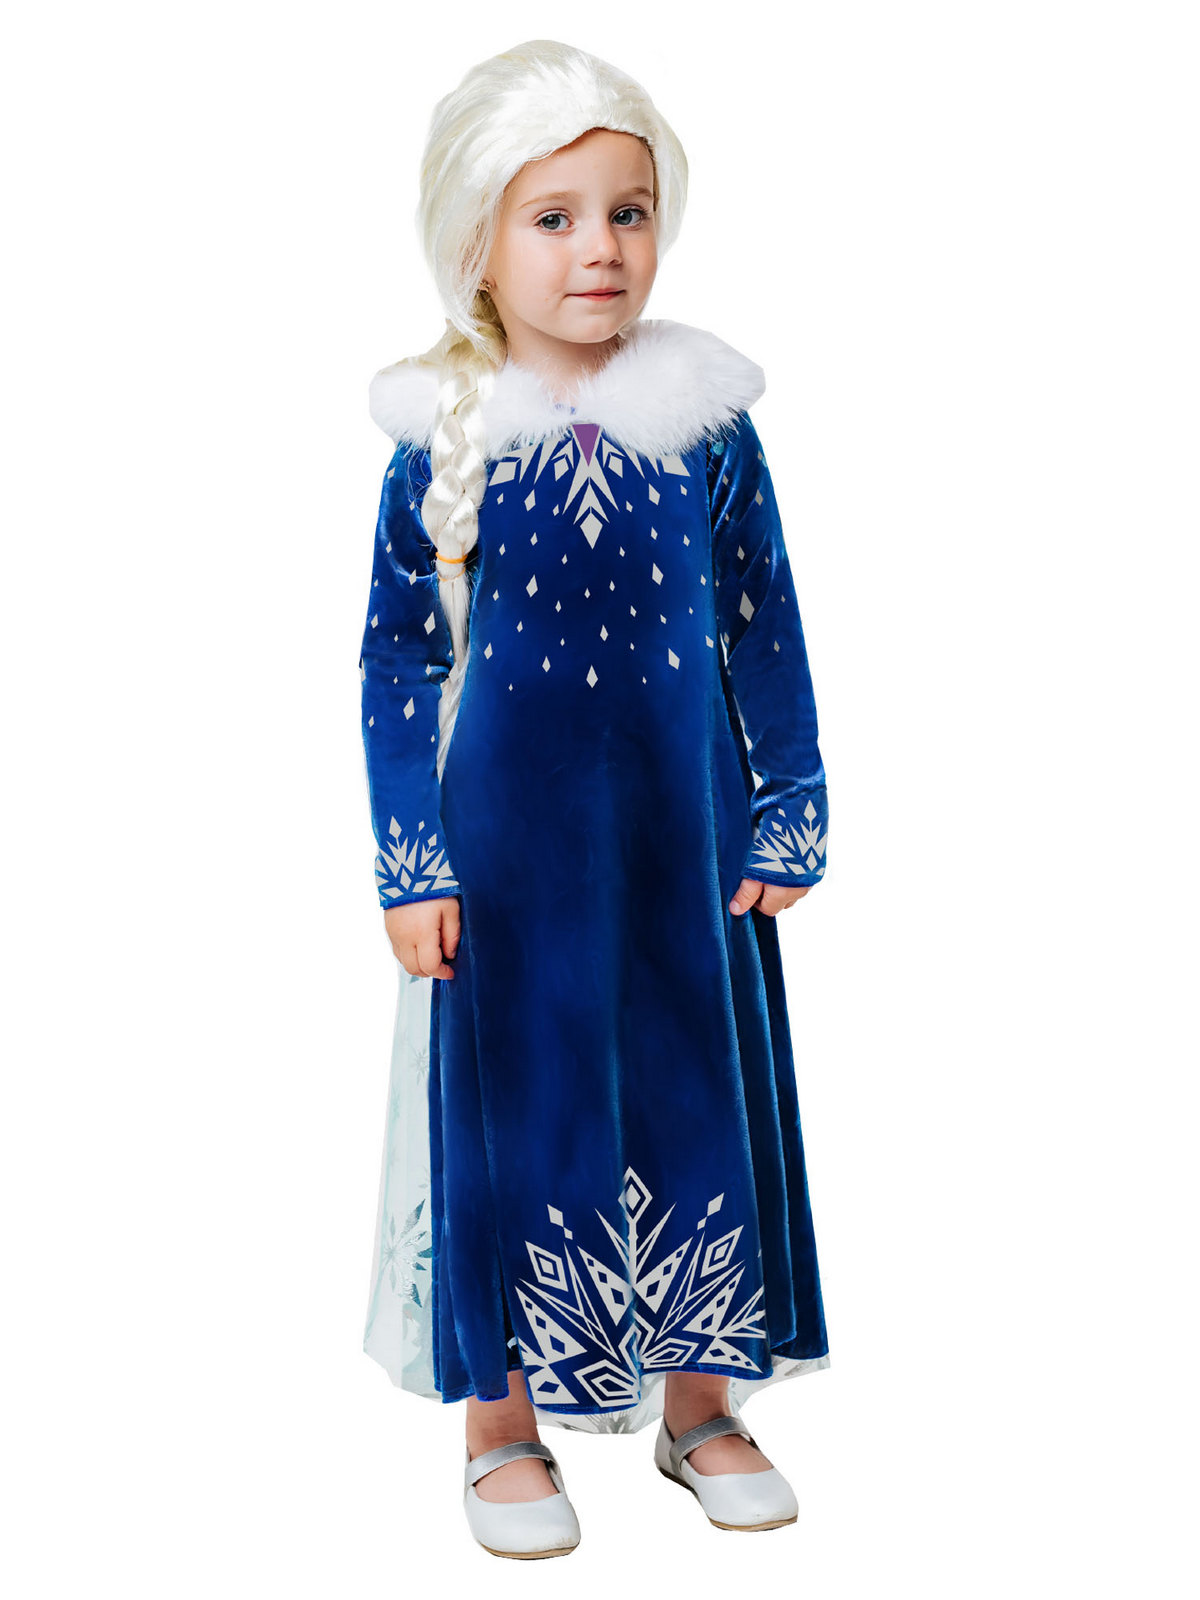 Карнавальный костюм Batik 9004 к-21 Эльза зимнее платье, синий, 116 карнавальный костюм batik 9004 к 21 эльза зимнее платье синий 104